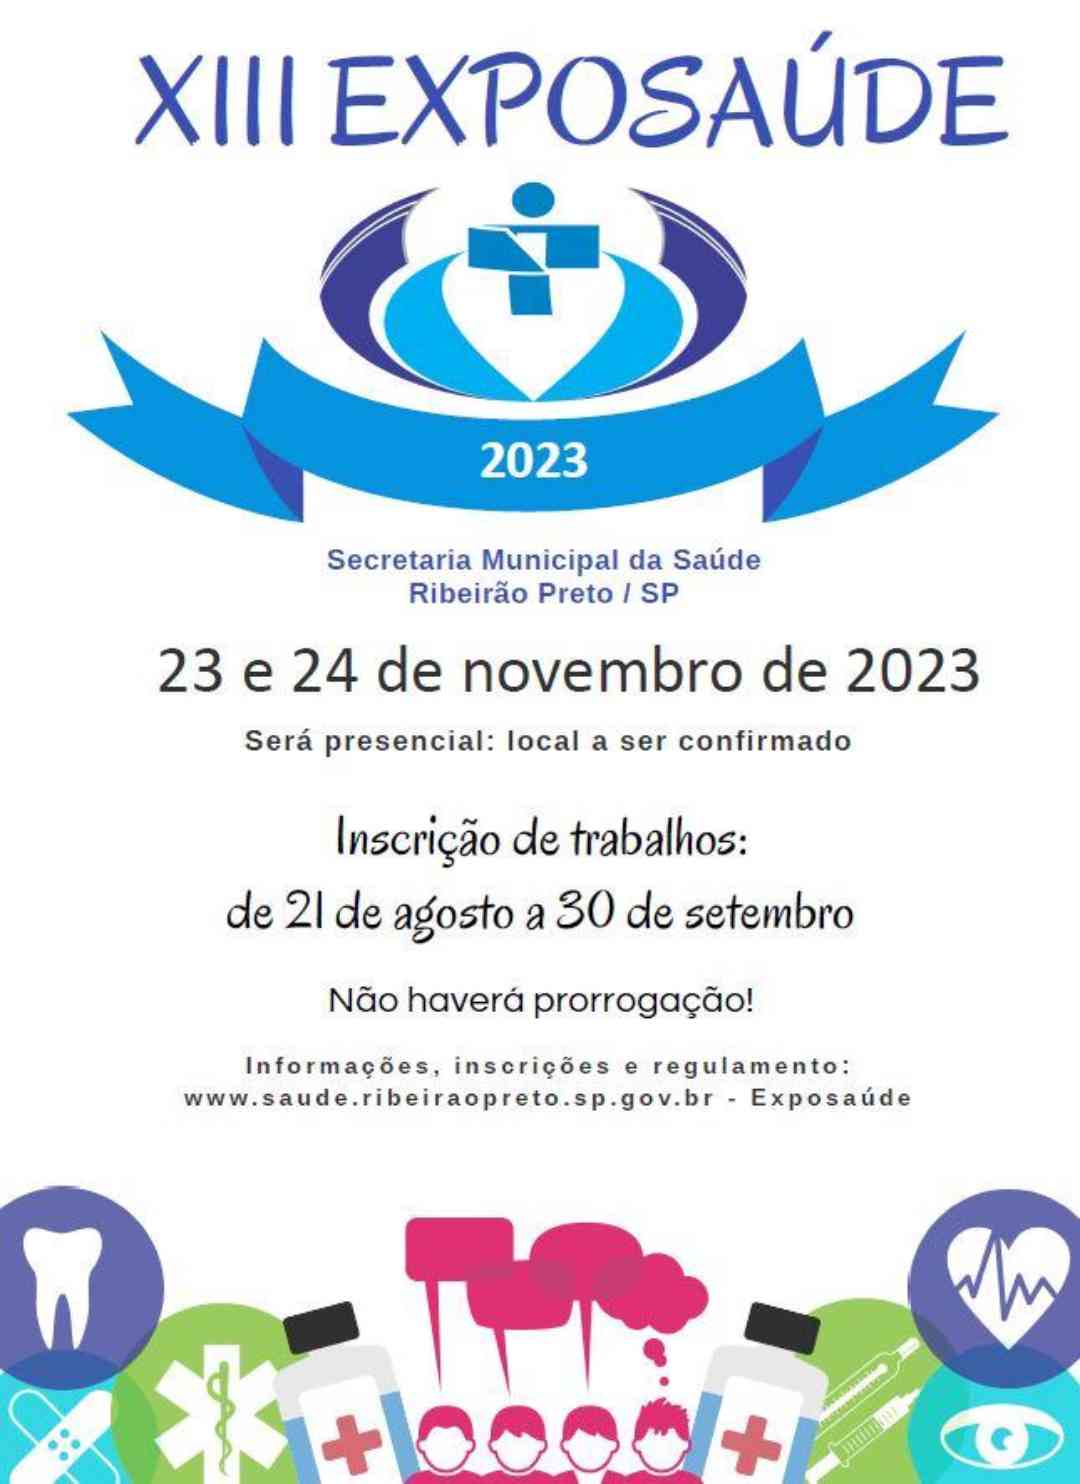 Evento que tem objetivo de identificar experiências bem sucedidas na saúde pública, acontecerá nos dias 23 e 24 de novembro de 2023